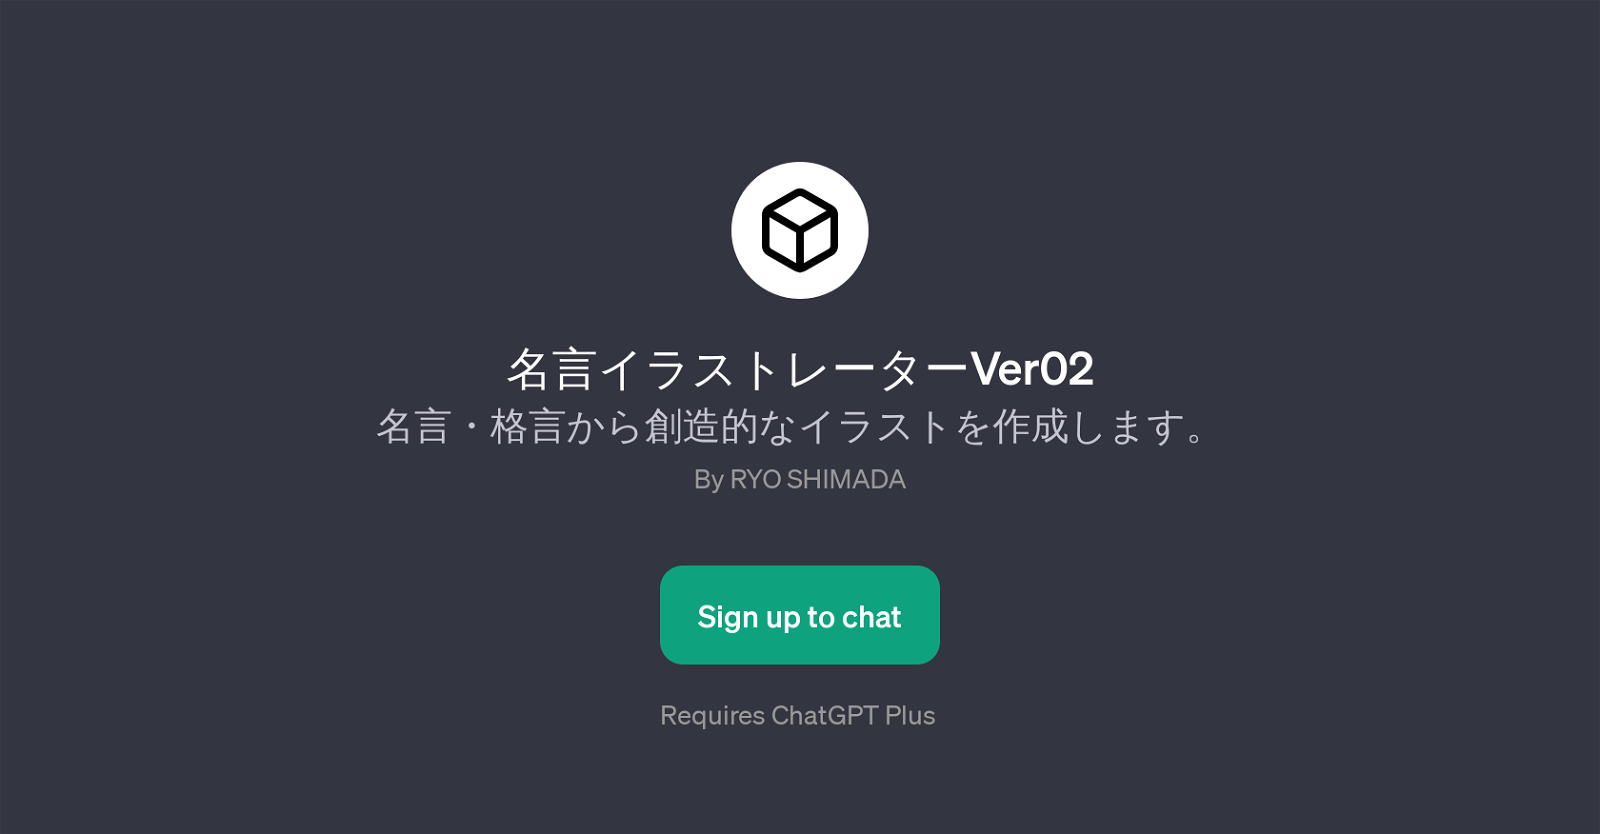 Ver02 website